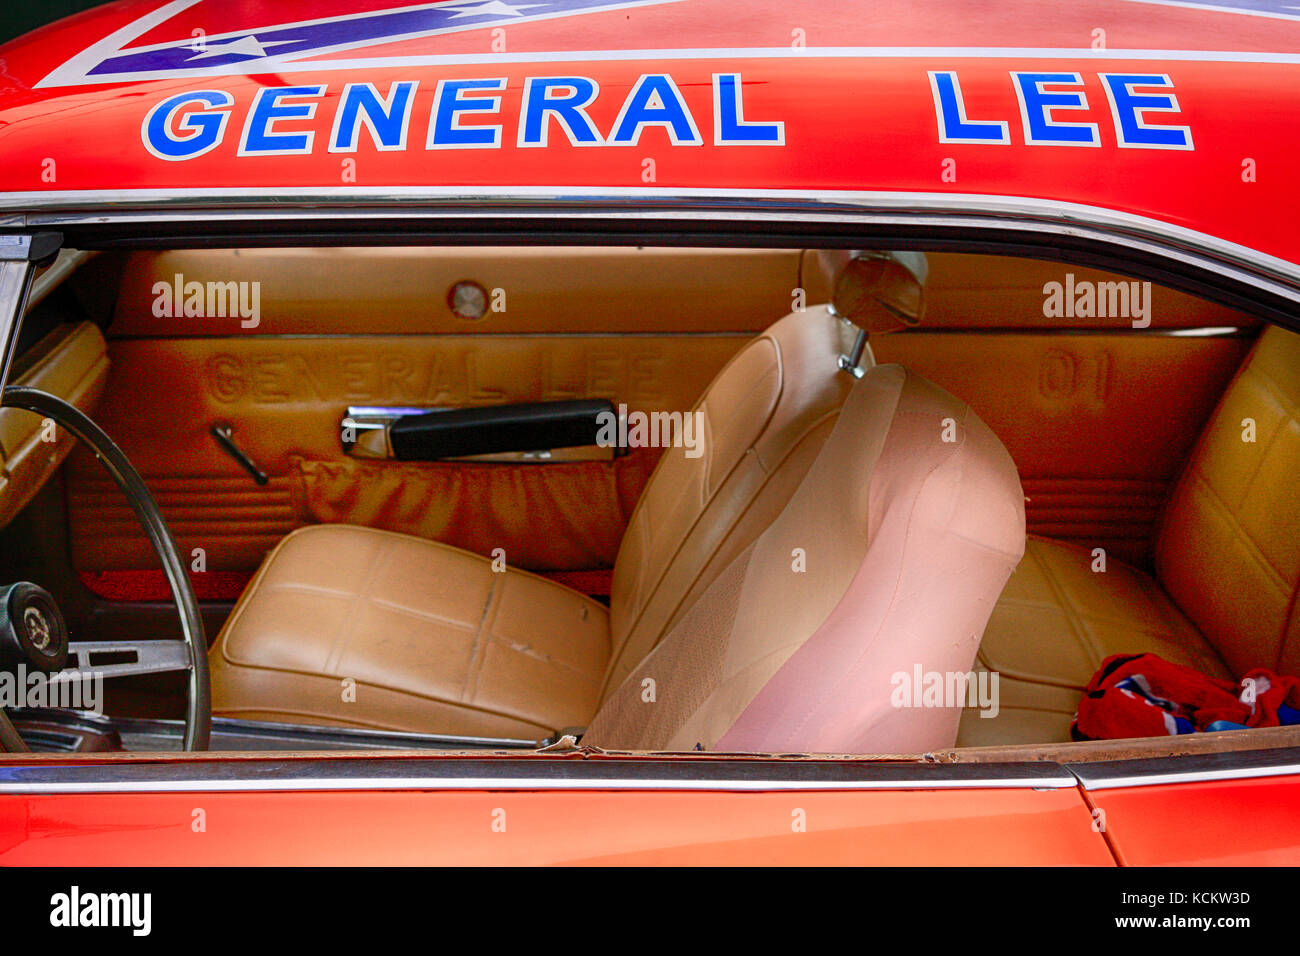 Il generale lee - Dodge Charger veicolo dei duchi di Hazzard fama Foto Stock